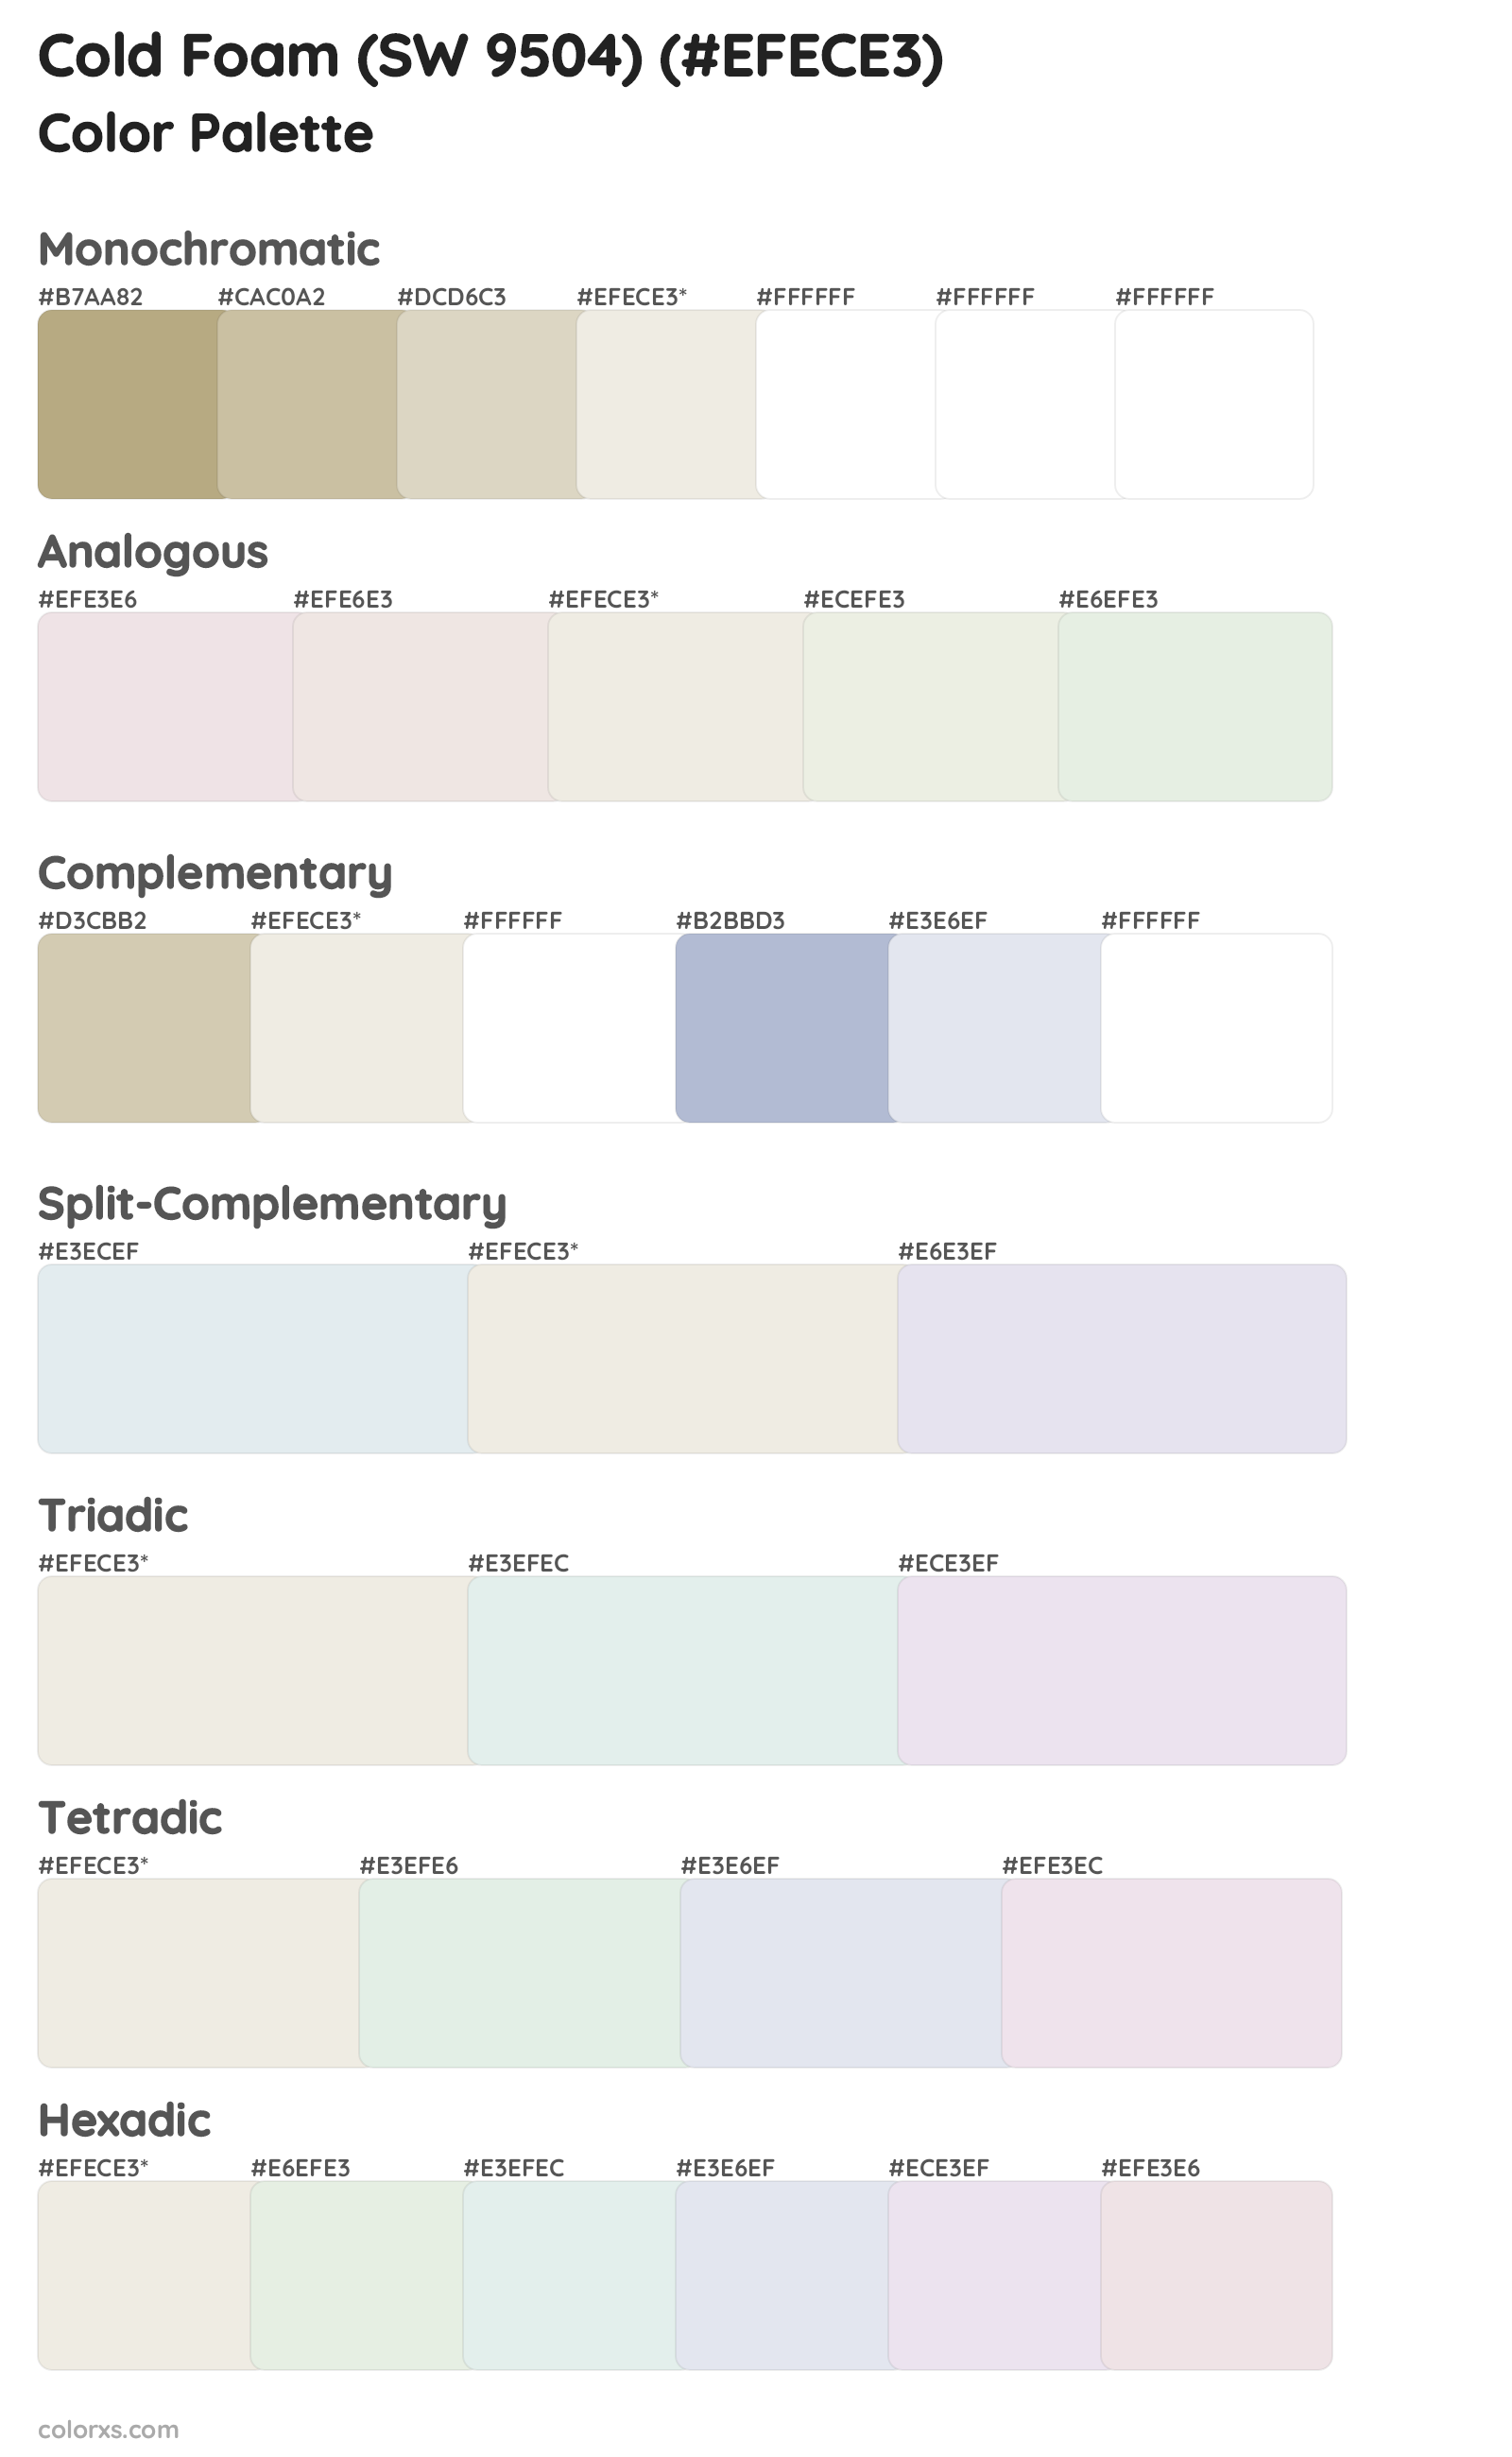 Cold Foam (SW 9504) Color Scheme Palettes